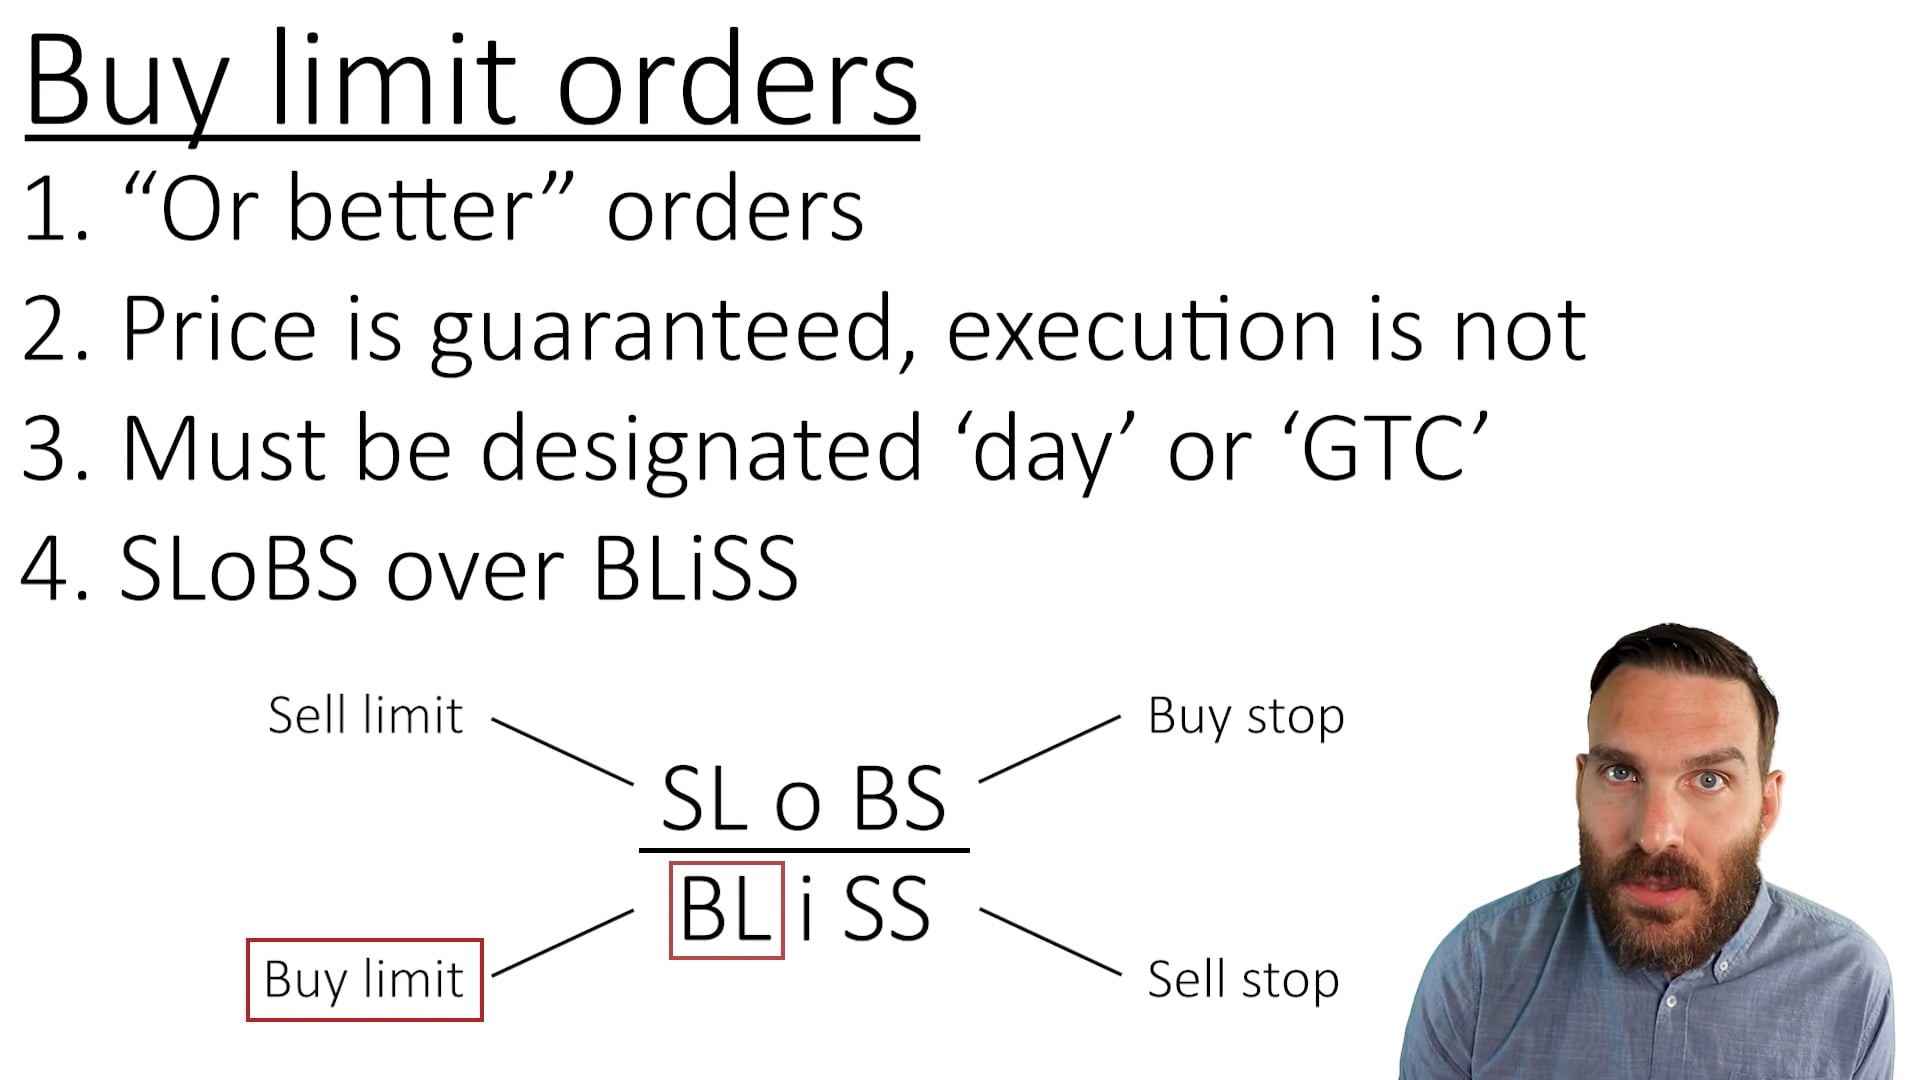 Buy limit orders